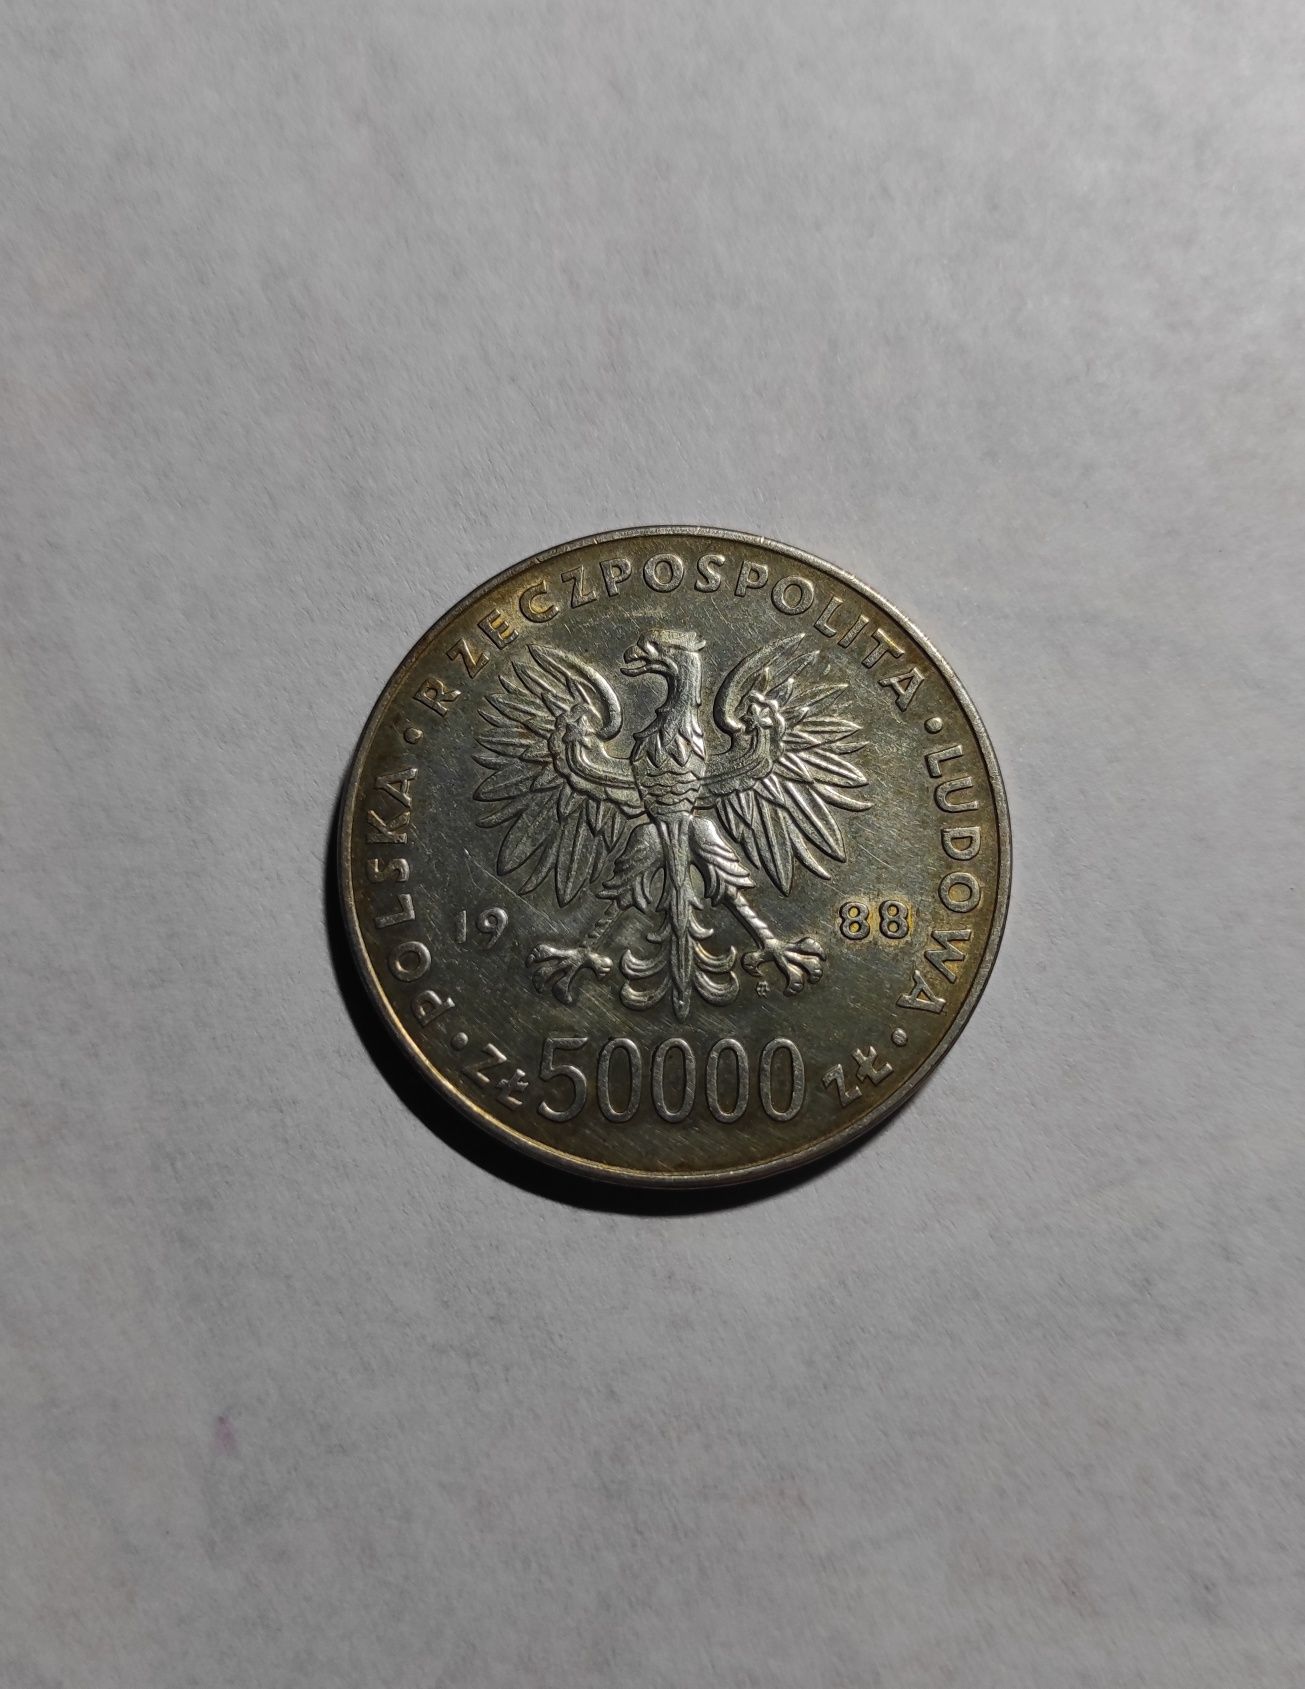 Moneta 50000zł , Józef Piłsudski 1988r.